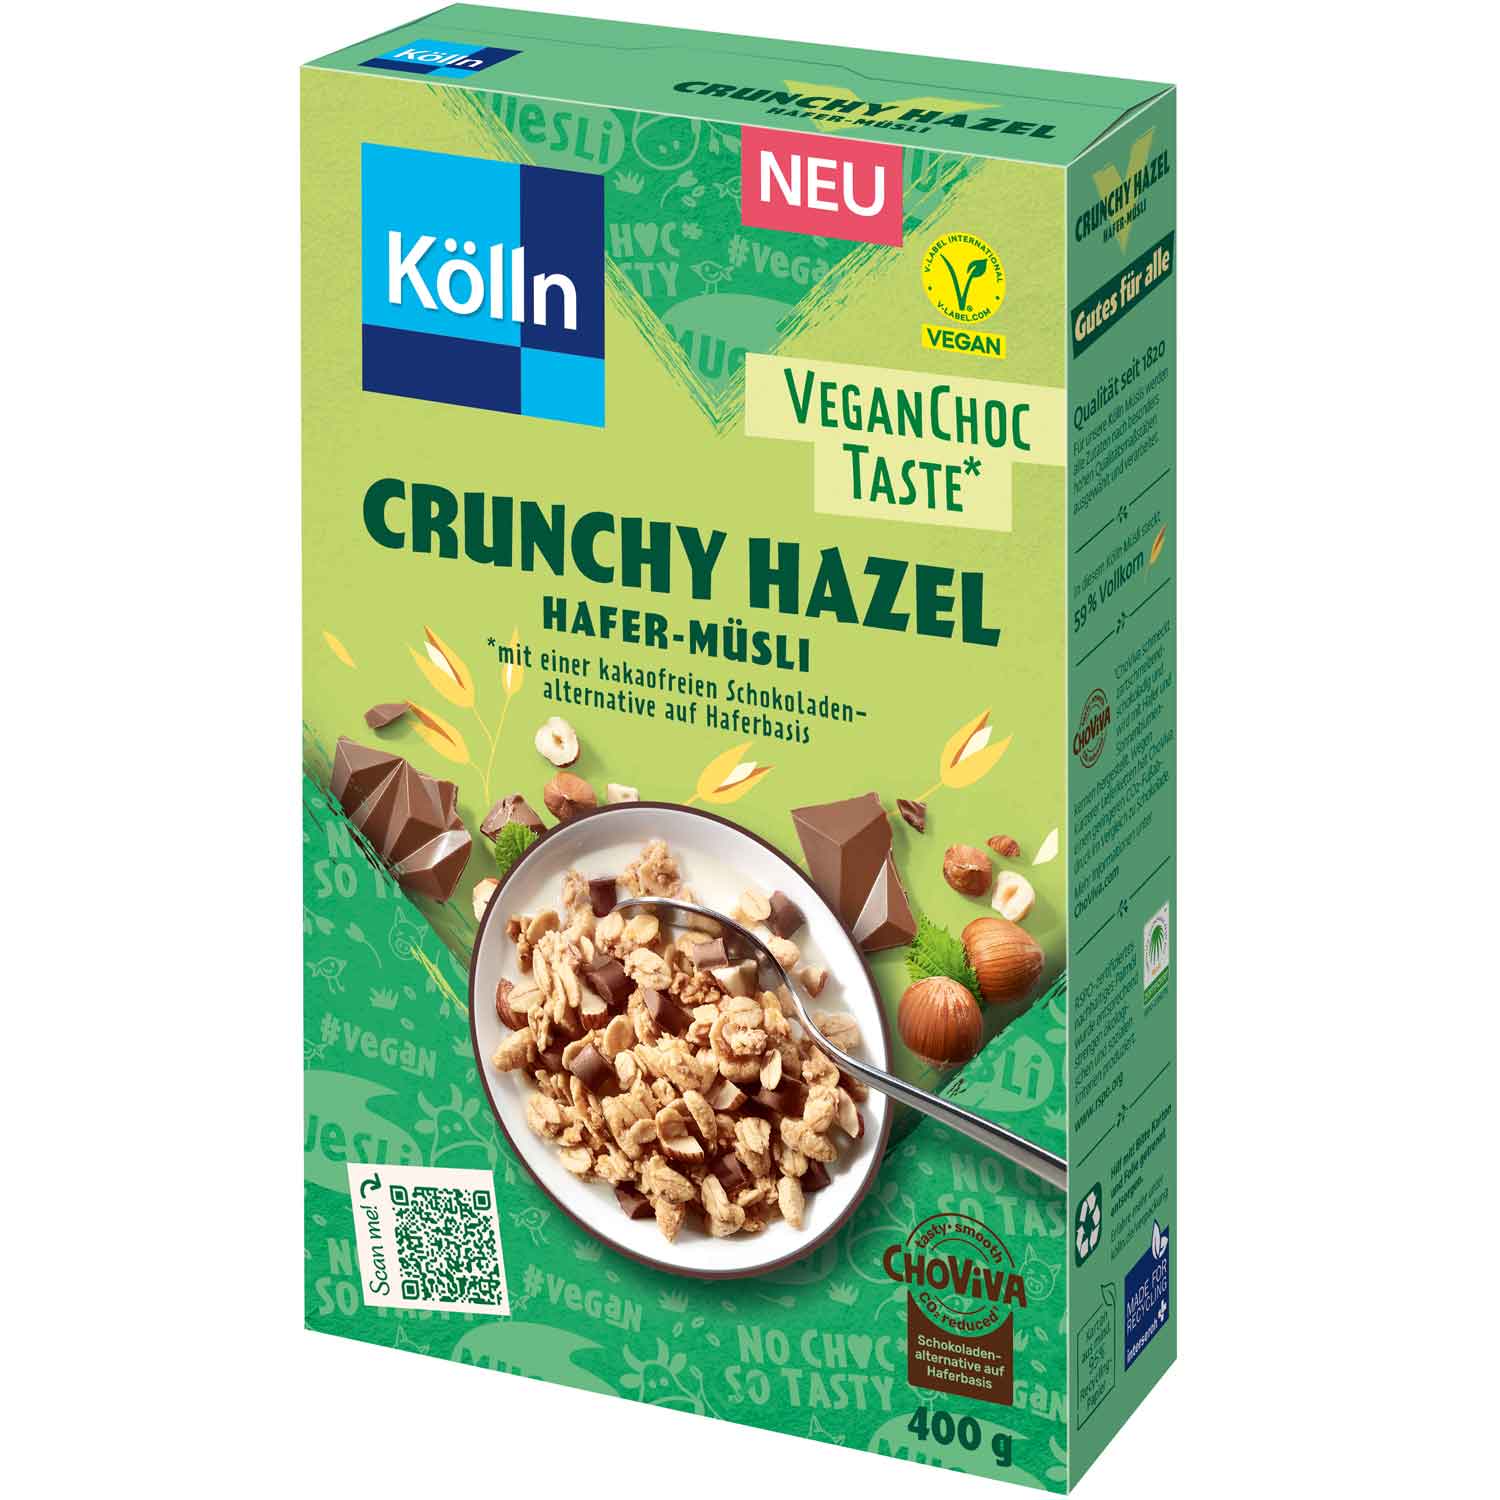 Kölln Hafer-Müsli Crunchy Vegan kaufen of im Taste World Shop Sweets Hazel Online Choc 400g 